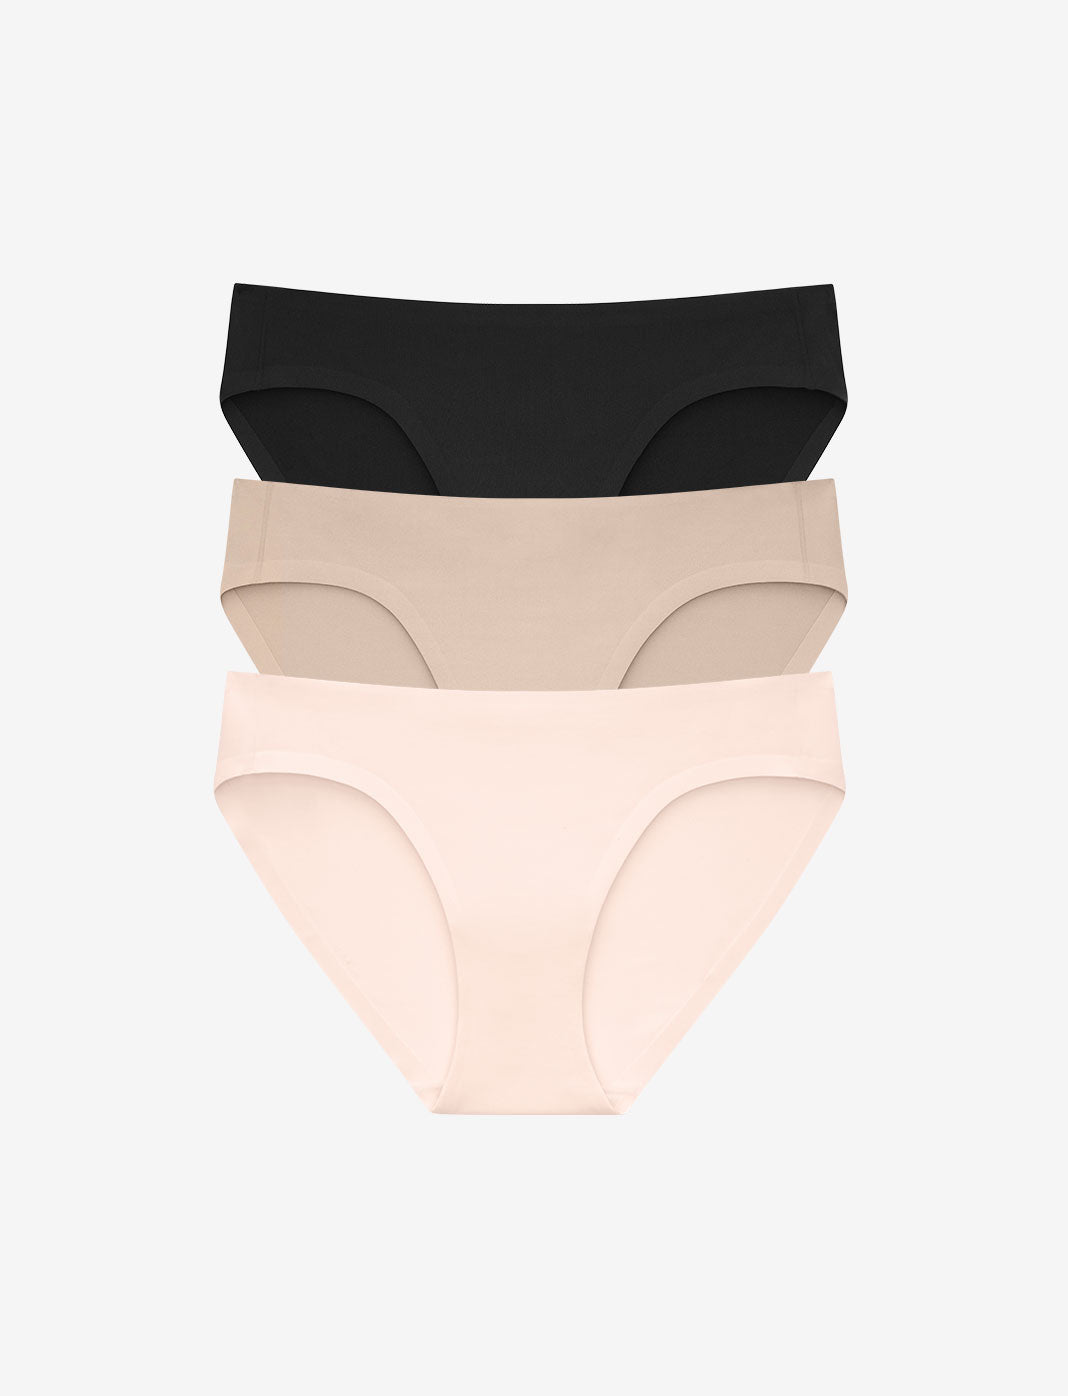 Shop Women’s Underwear & Panties - Most Comfortable Underwear & Panties ...